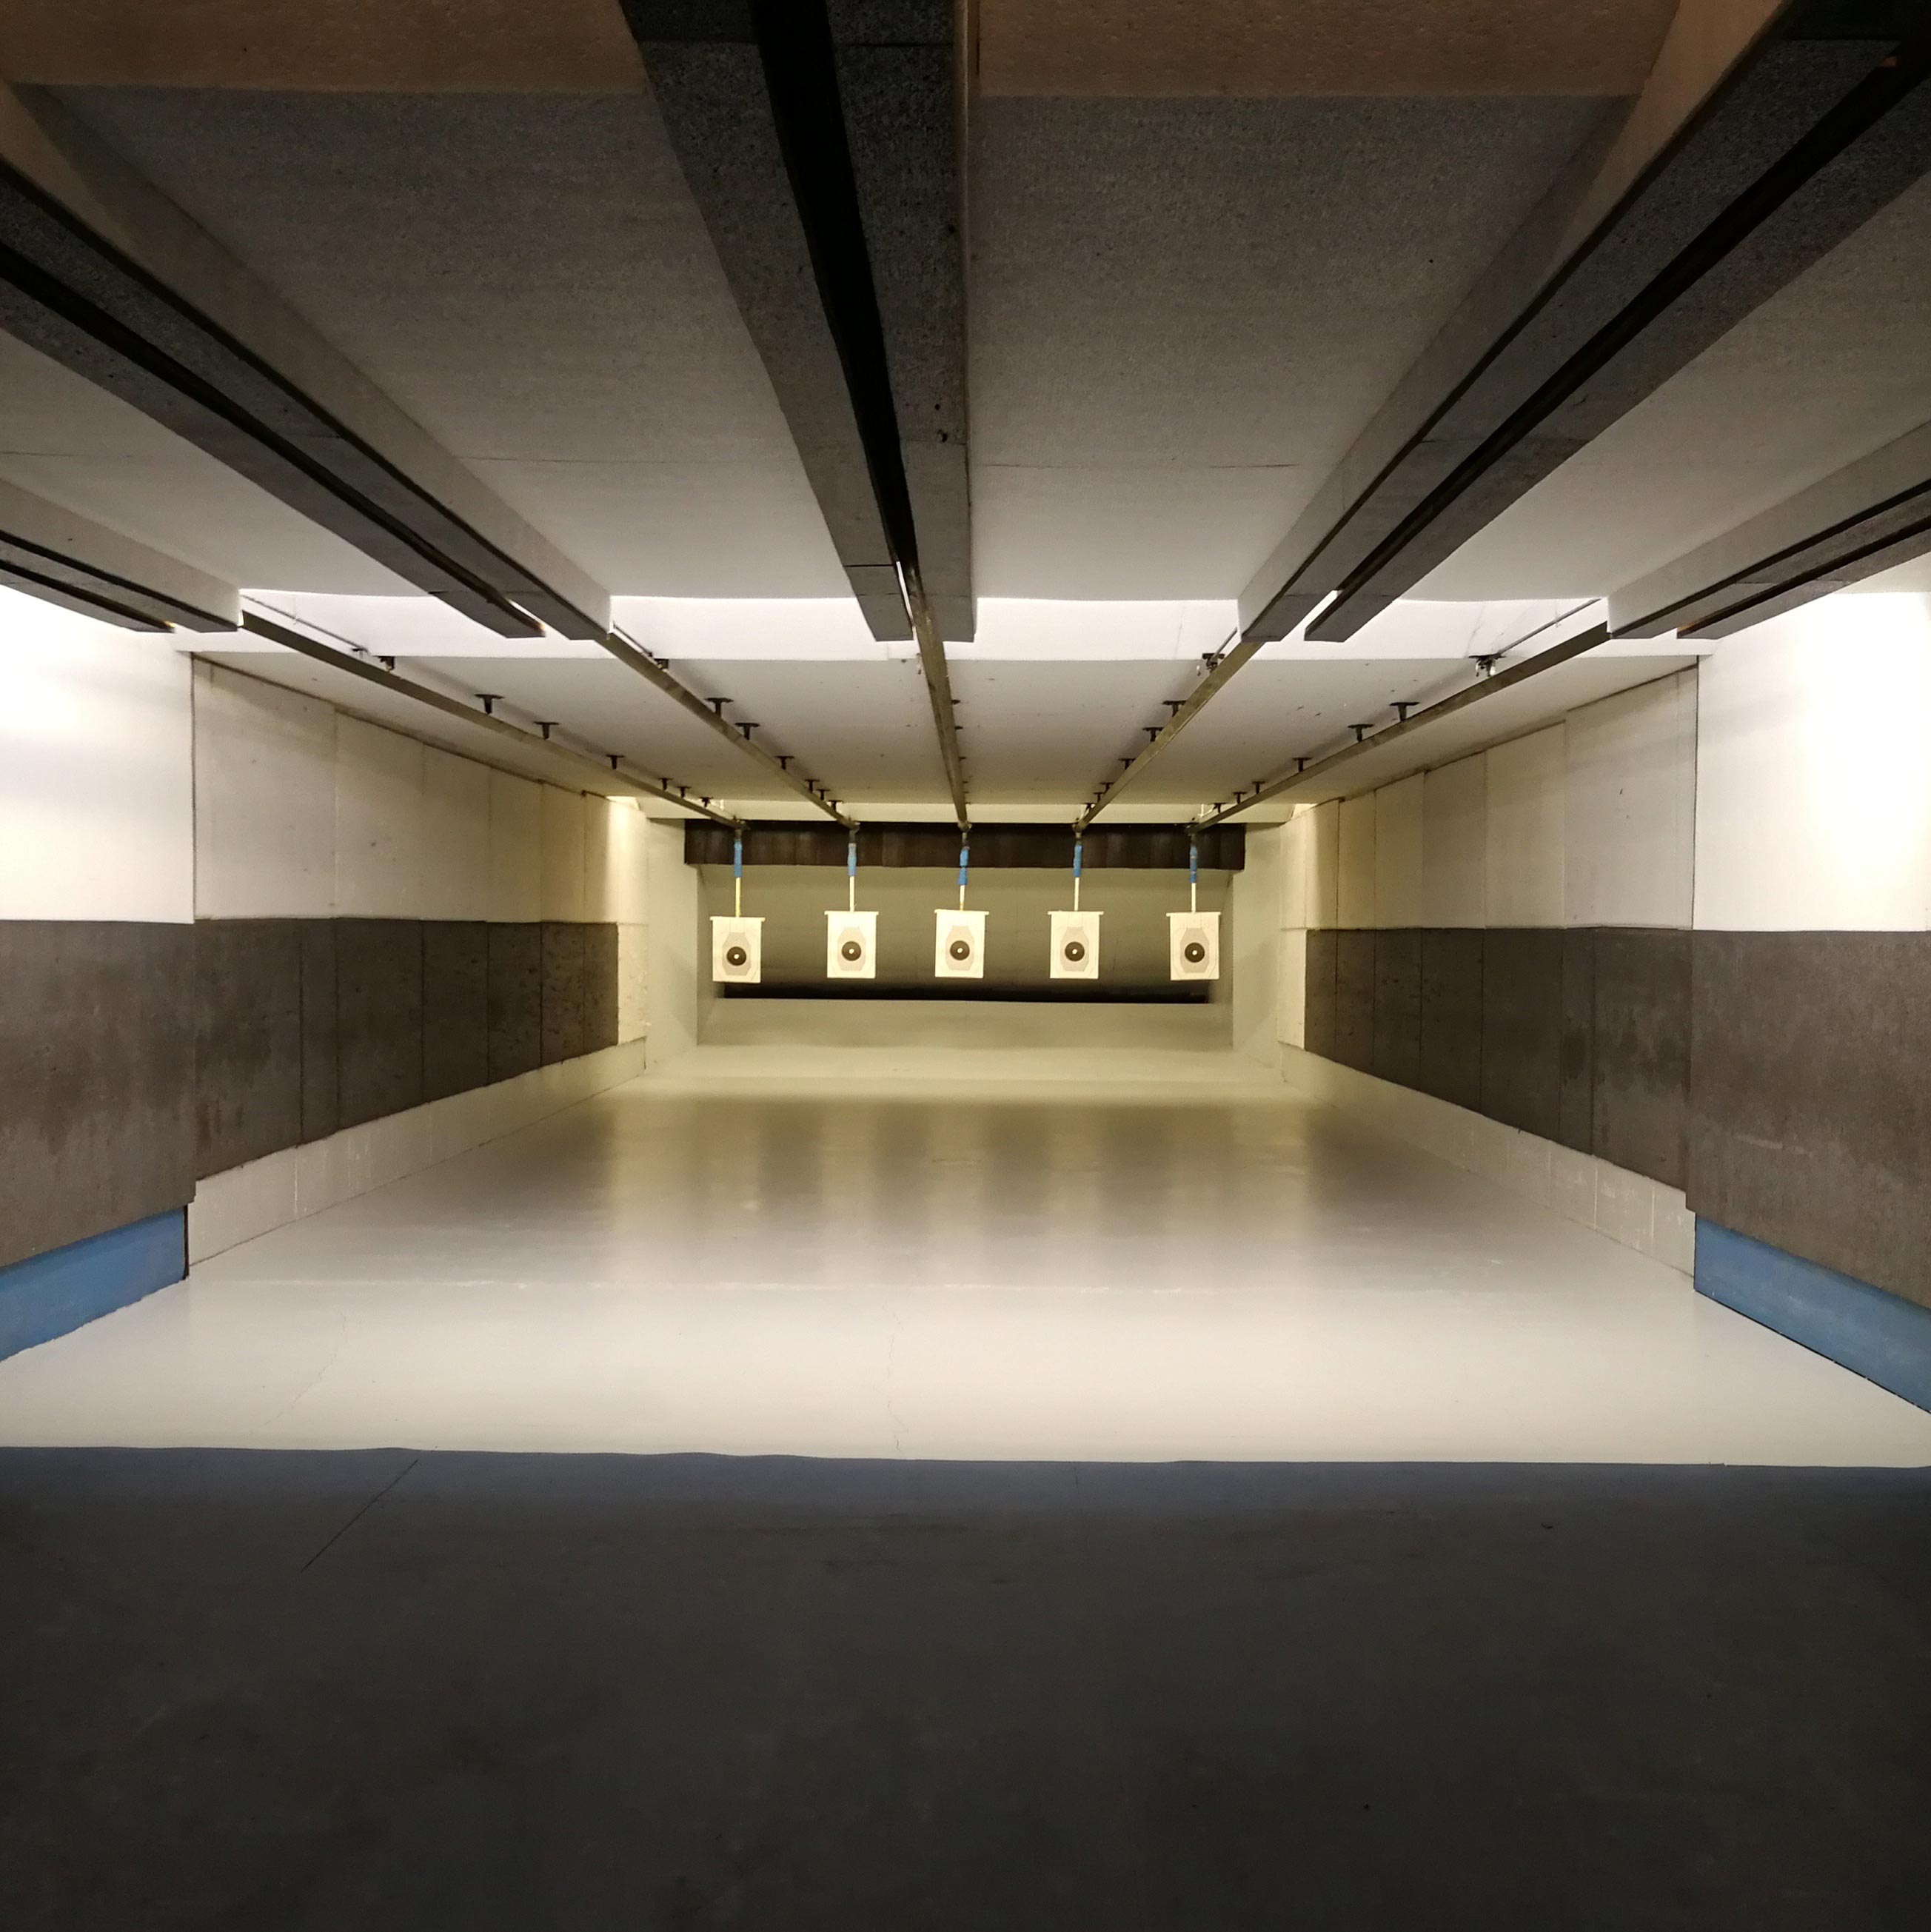 T.S.N. Treviglio / Struttura / Poligono in galleria a mt. 10 o 25 per armi corte di grosso calibro con 5 linee automatizzate 3